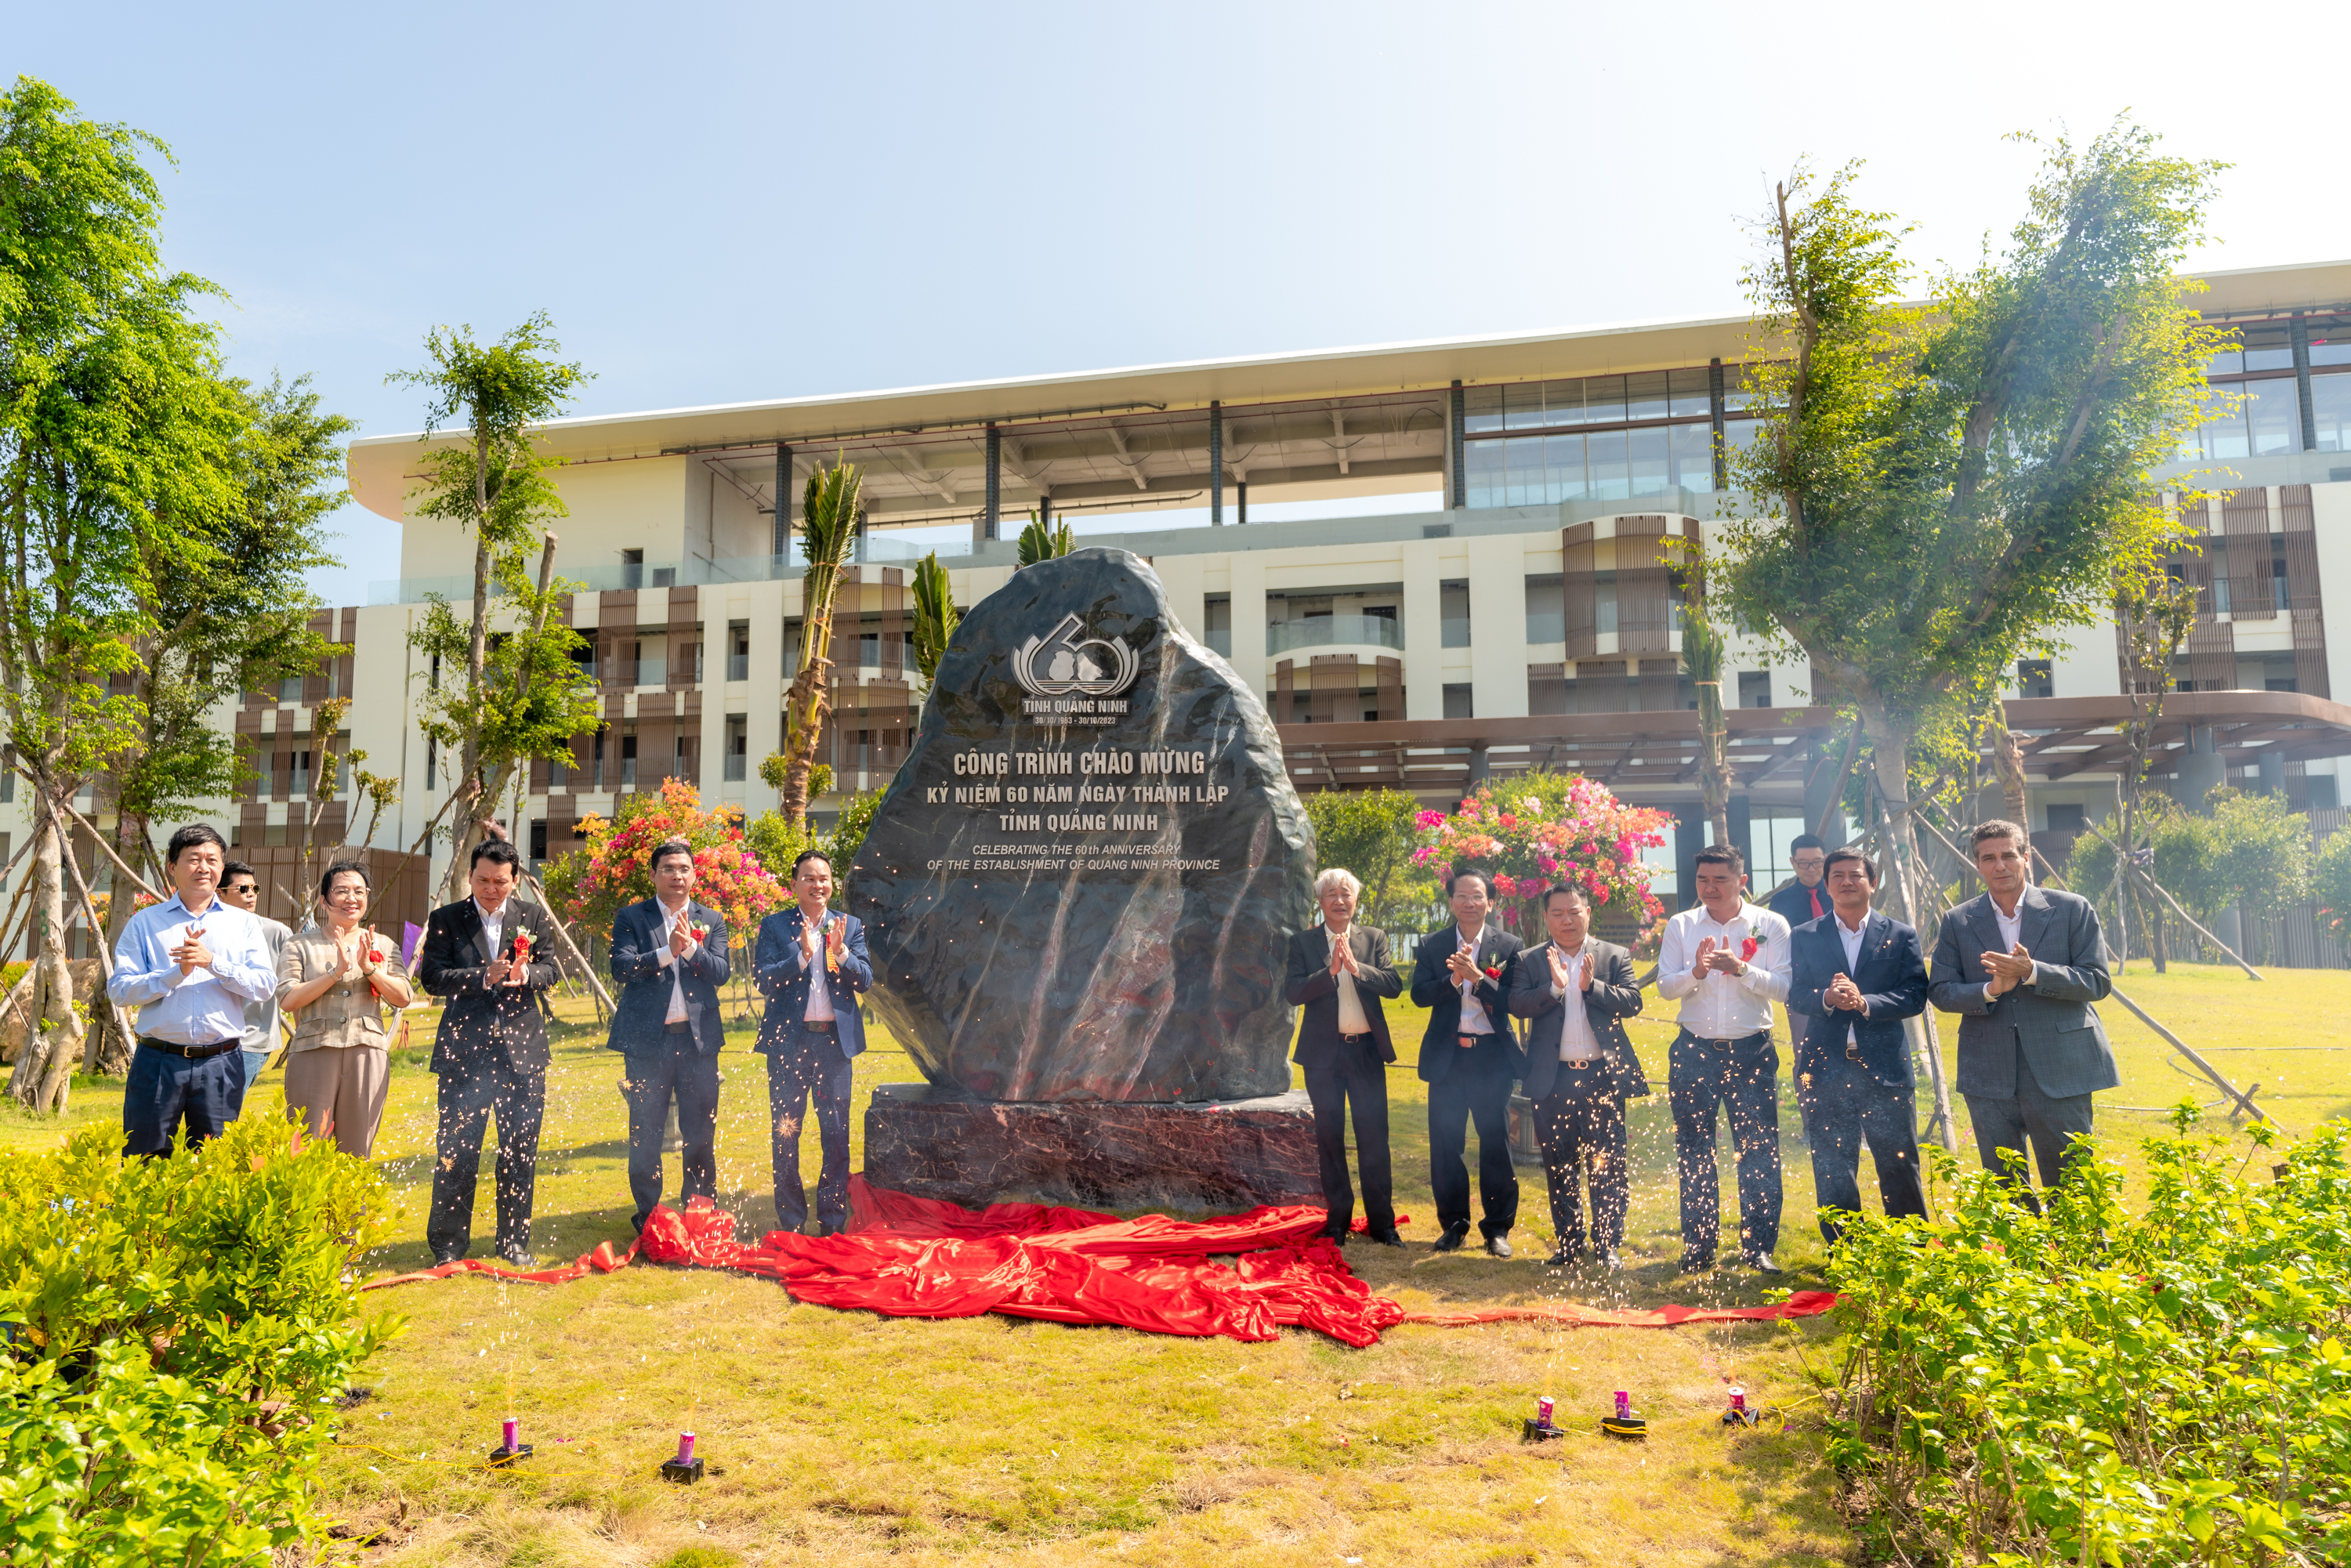 Lễ gắn biển chào mừng kỷ niệm 60 năm thành lập tỉnh Quảng Ninh và 75 năm thành lập huyện Vân Đồn tại công trình Khu du lịch sinh thái cao cấp Vân Hải (Viglacera)